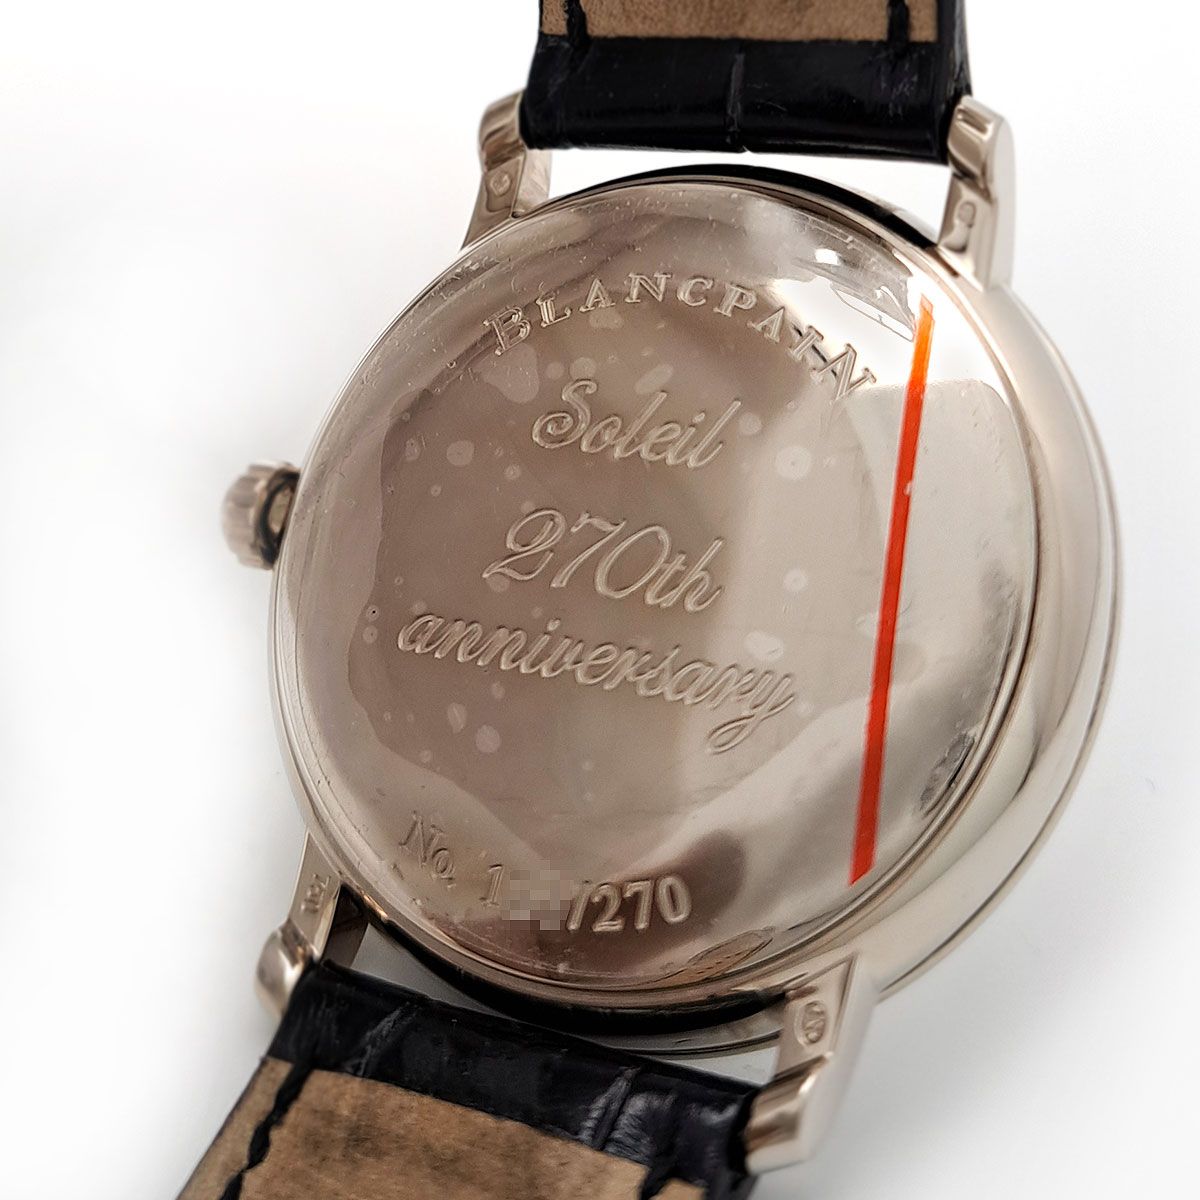 ブランパン BLANCPAIN ヴィルレ 4063-1542-55 K18ホワイトゴールド 自動巻き メンズ 腕時計